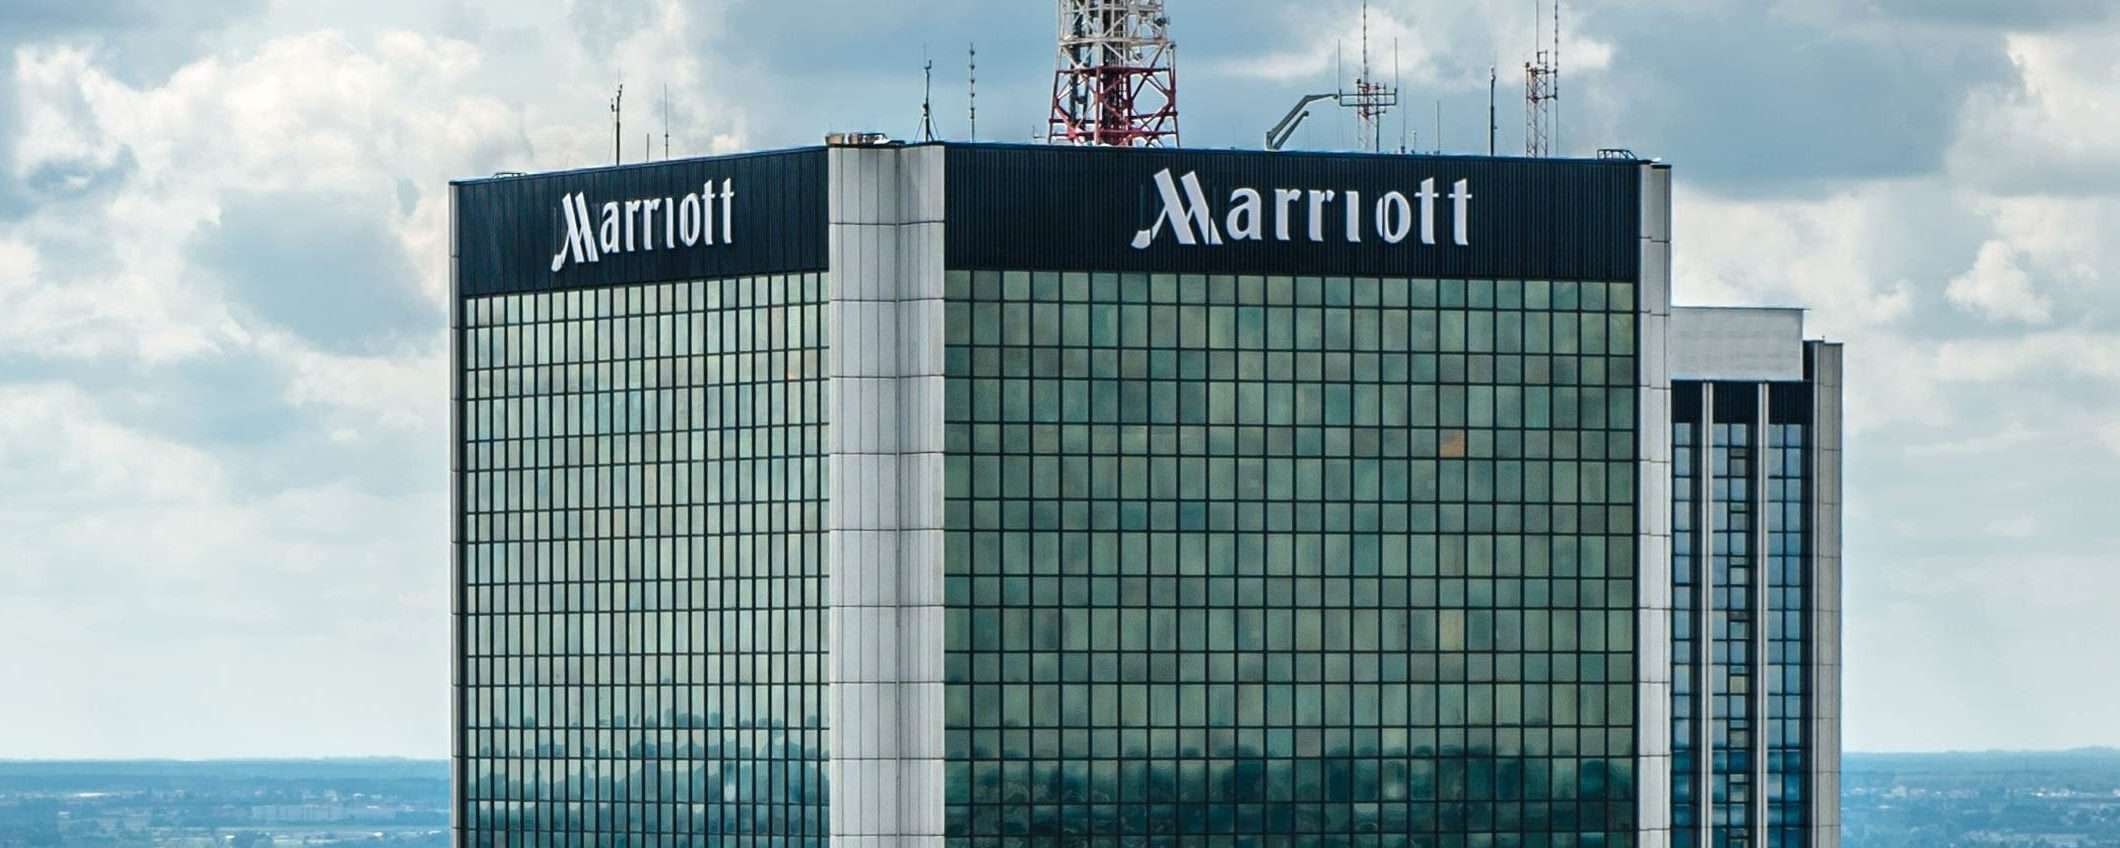 Marriott, ci risiamo: un altro data breach